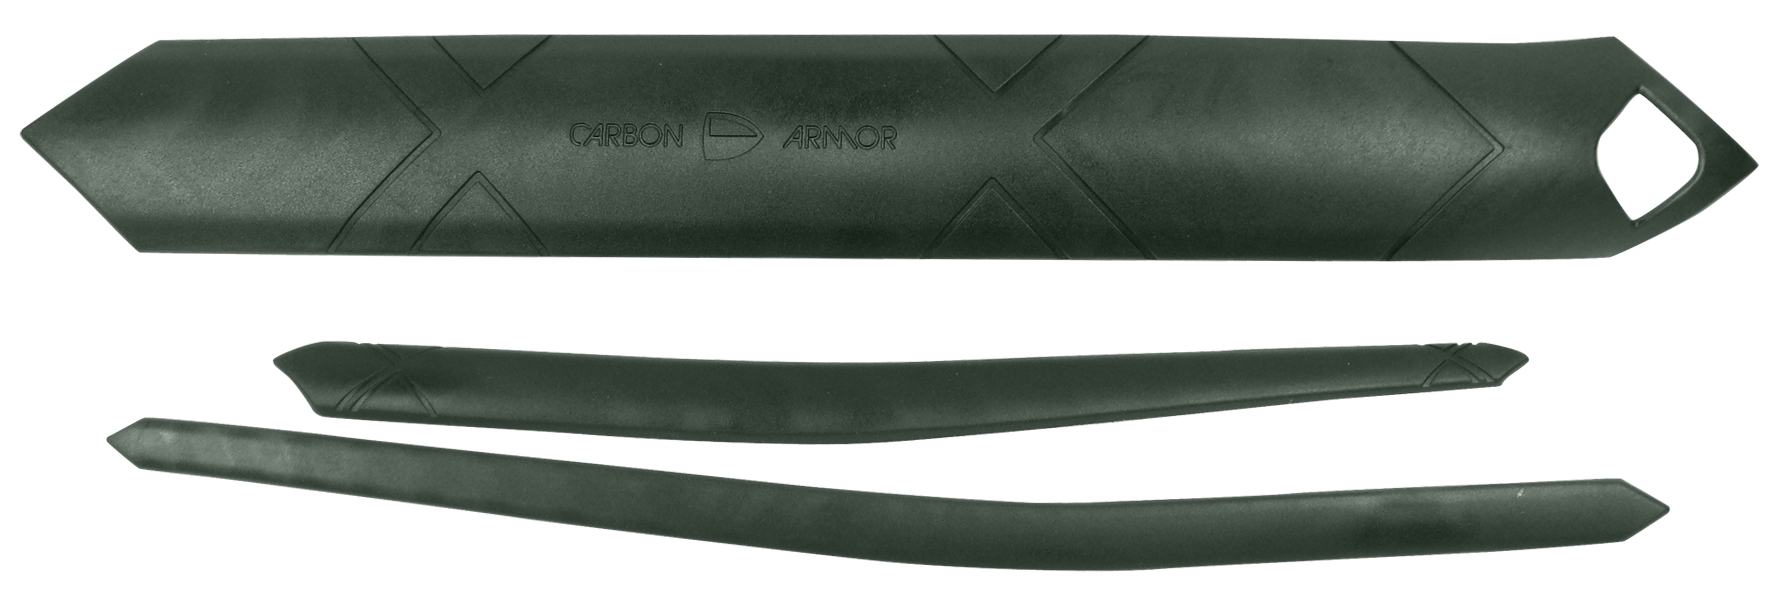 Trek Jeu de protections Superfly Hartail Carbon Armor - Noir